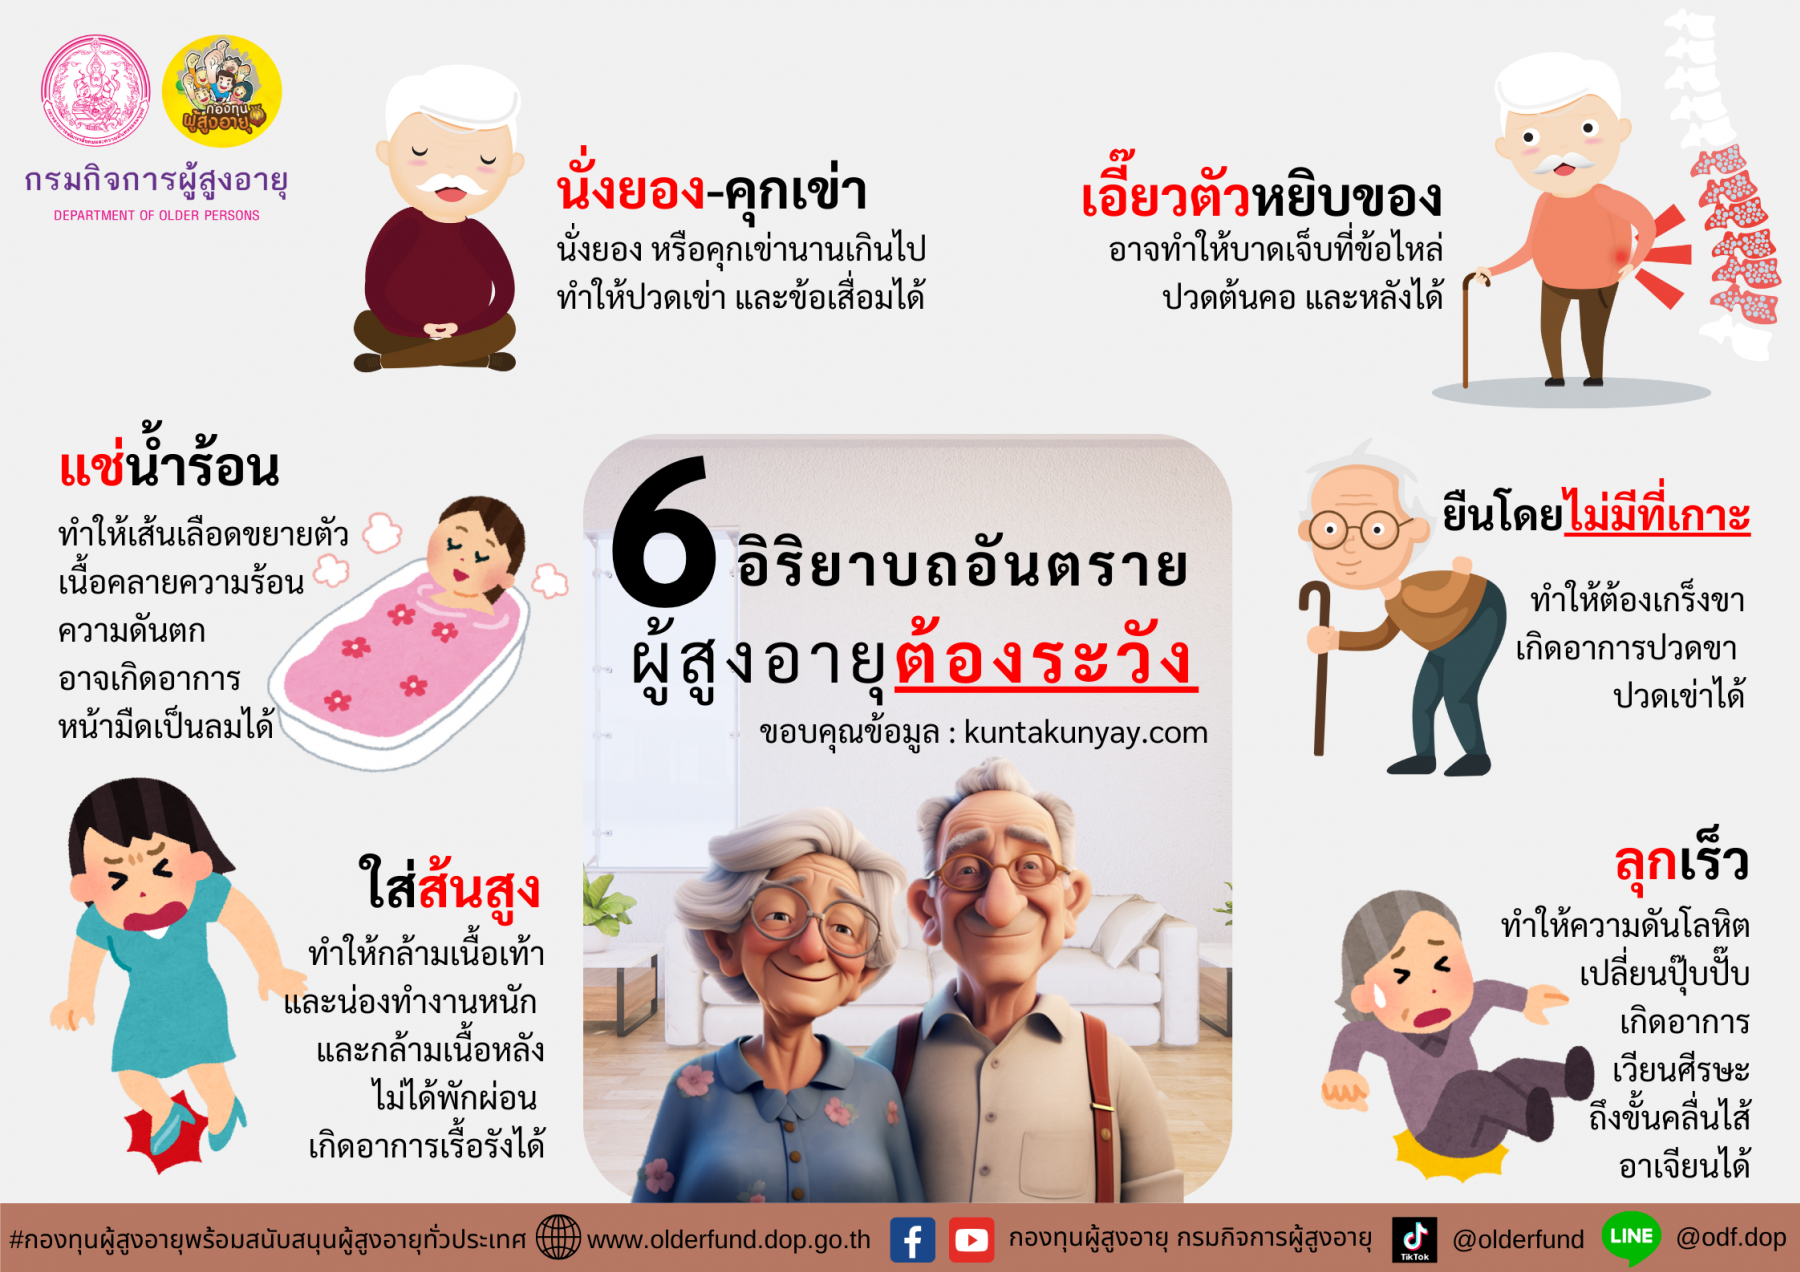 6 อิริยาบถอันตรายที่ผู้สูงอายุต้องระวัง